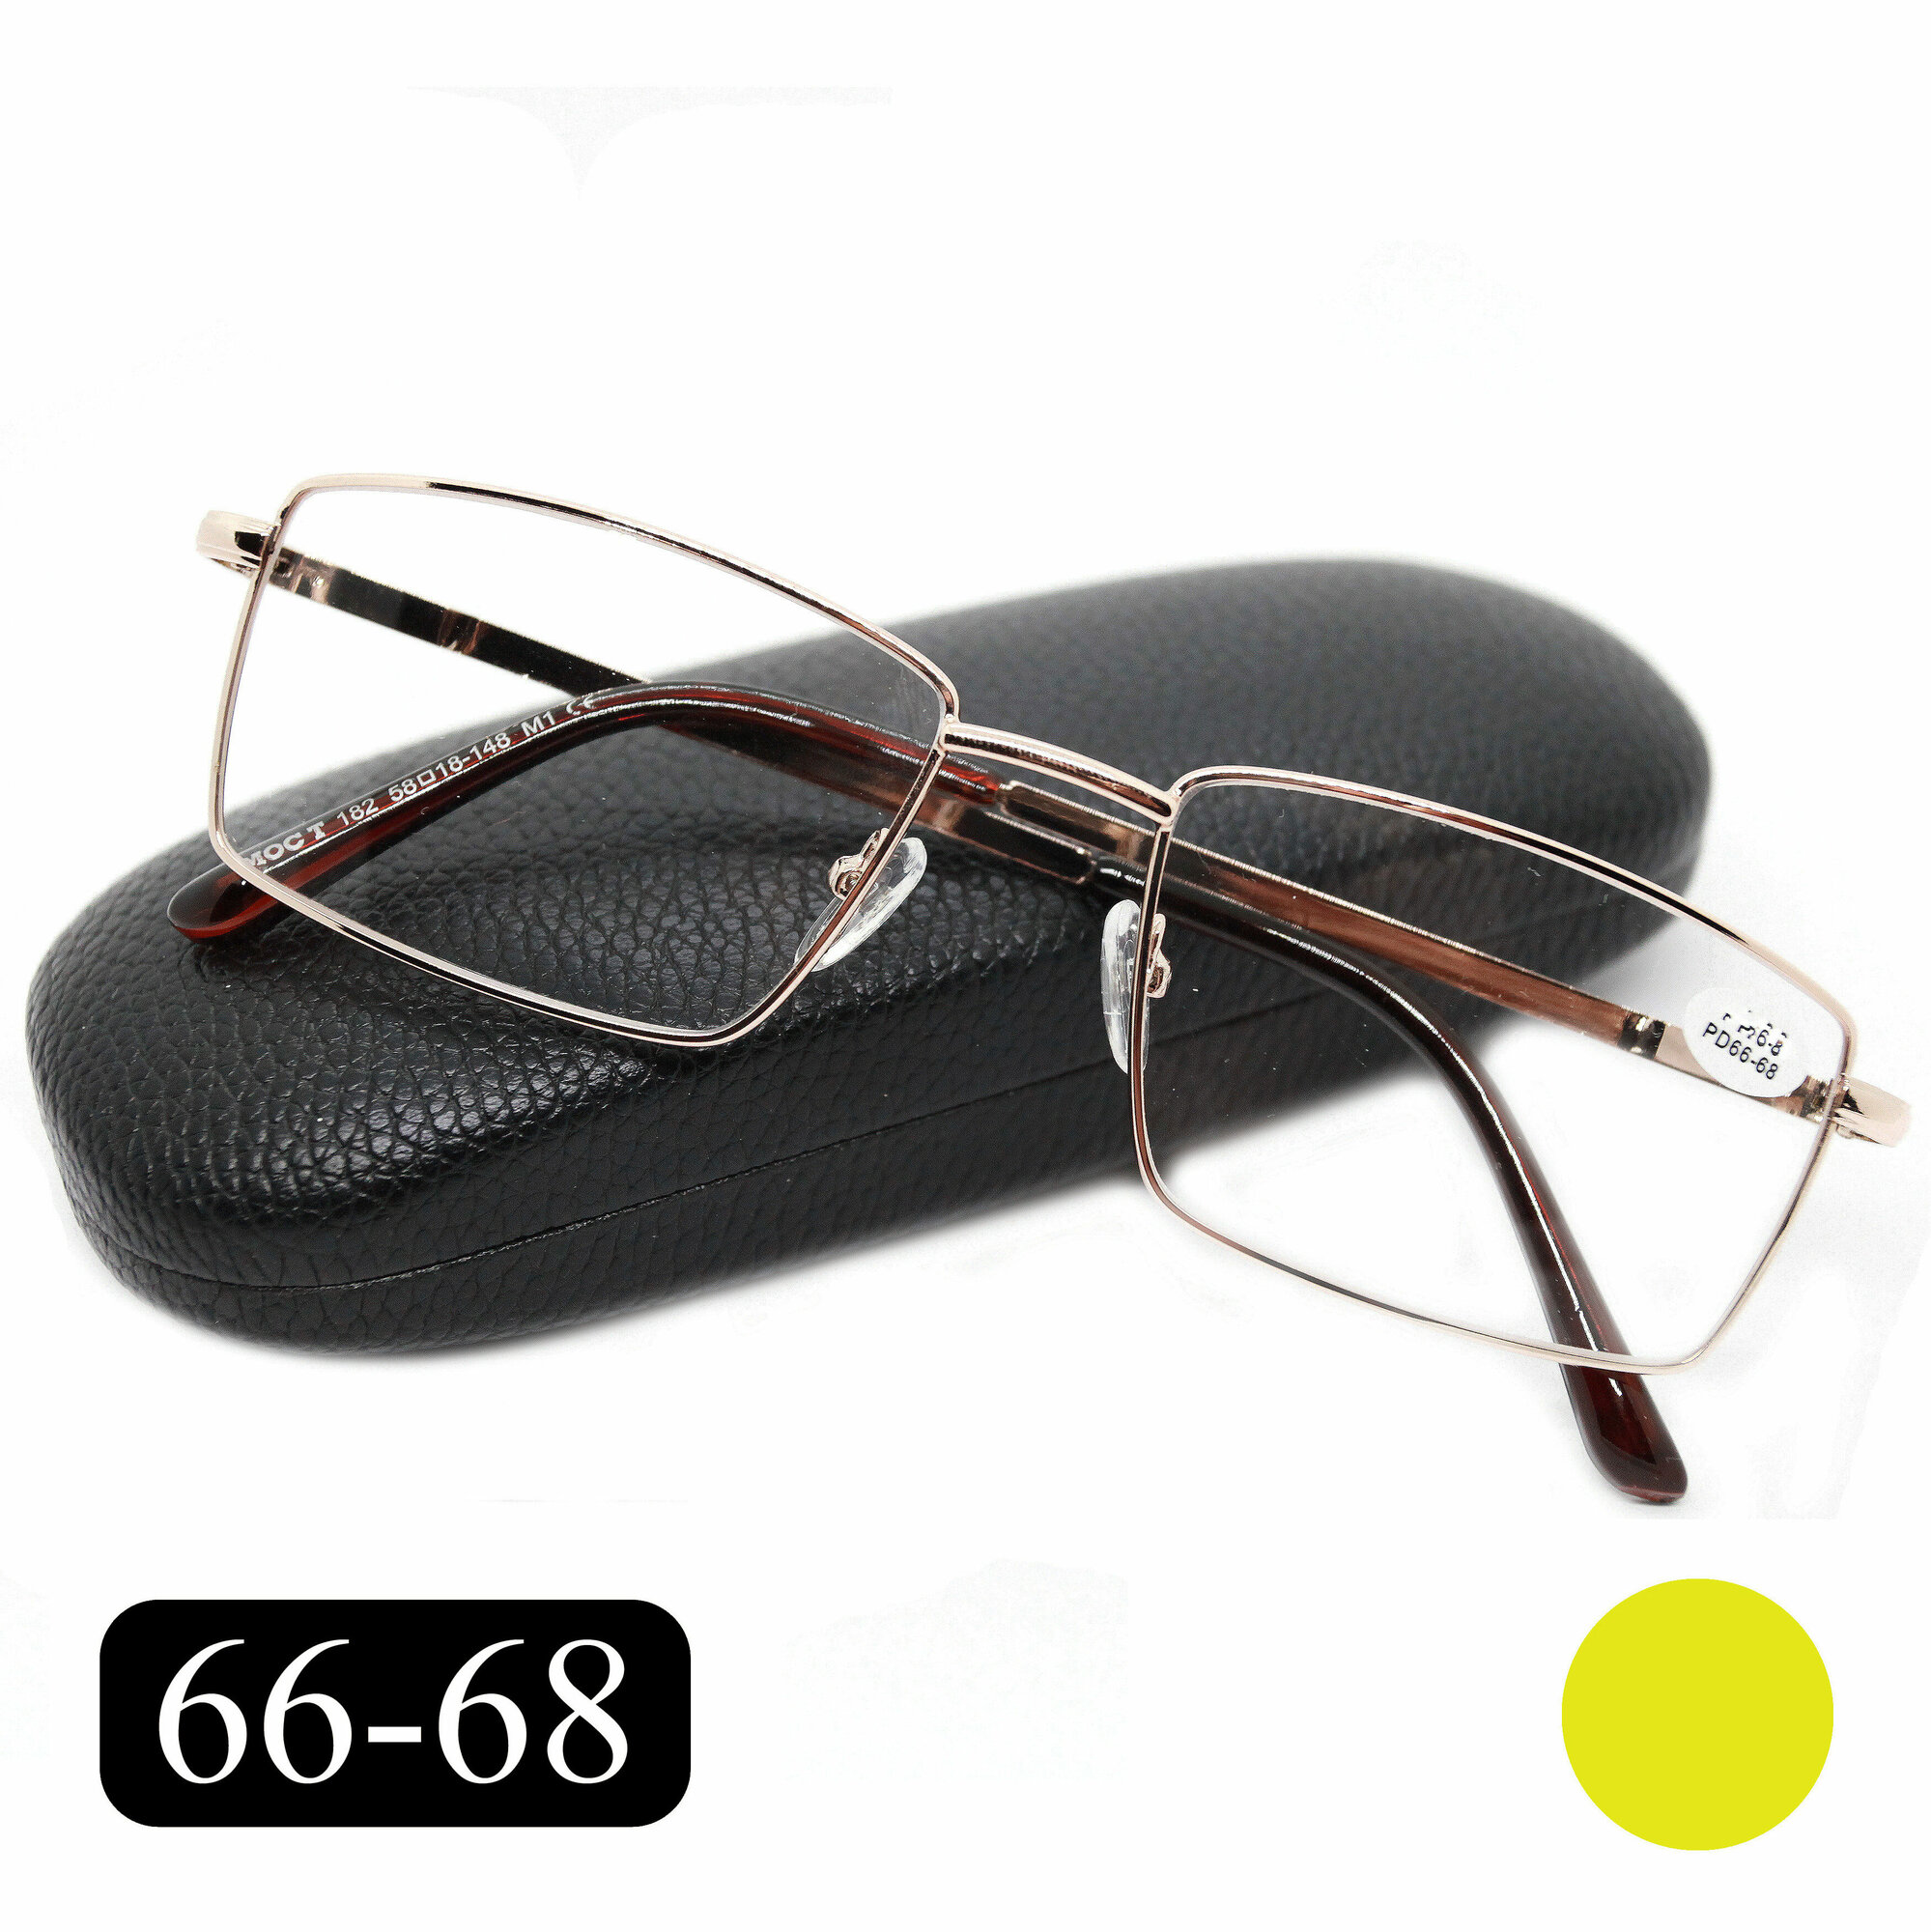 Готовые очки на крупное лицо РЦ 66-68 (+2.75) MOCT 182 M1, с футляром, цвет золотой, линзы пластик, РЦ 66-68